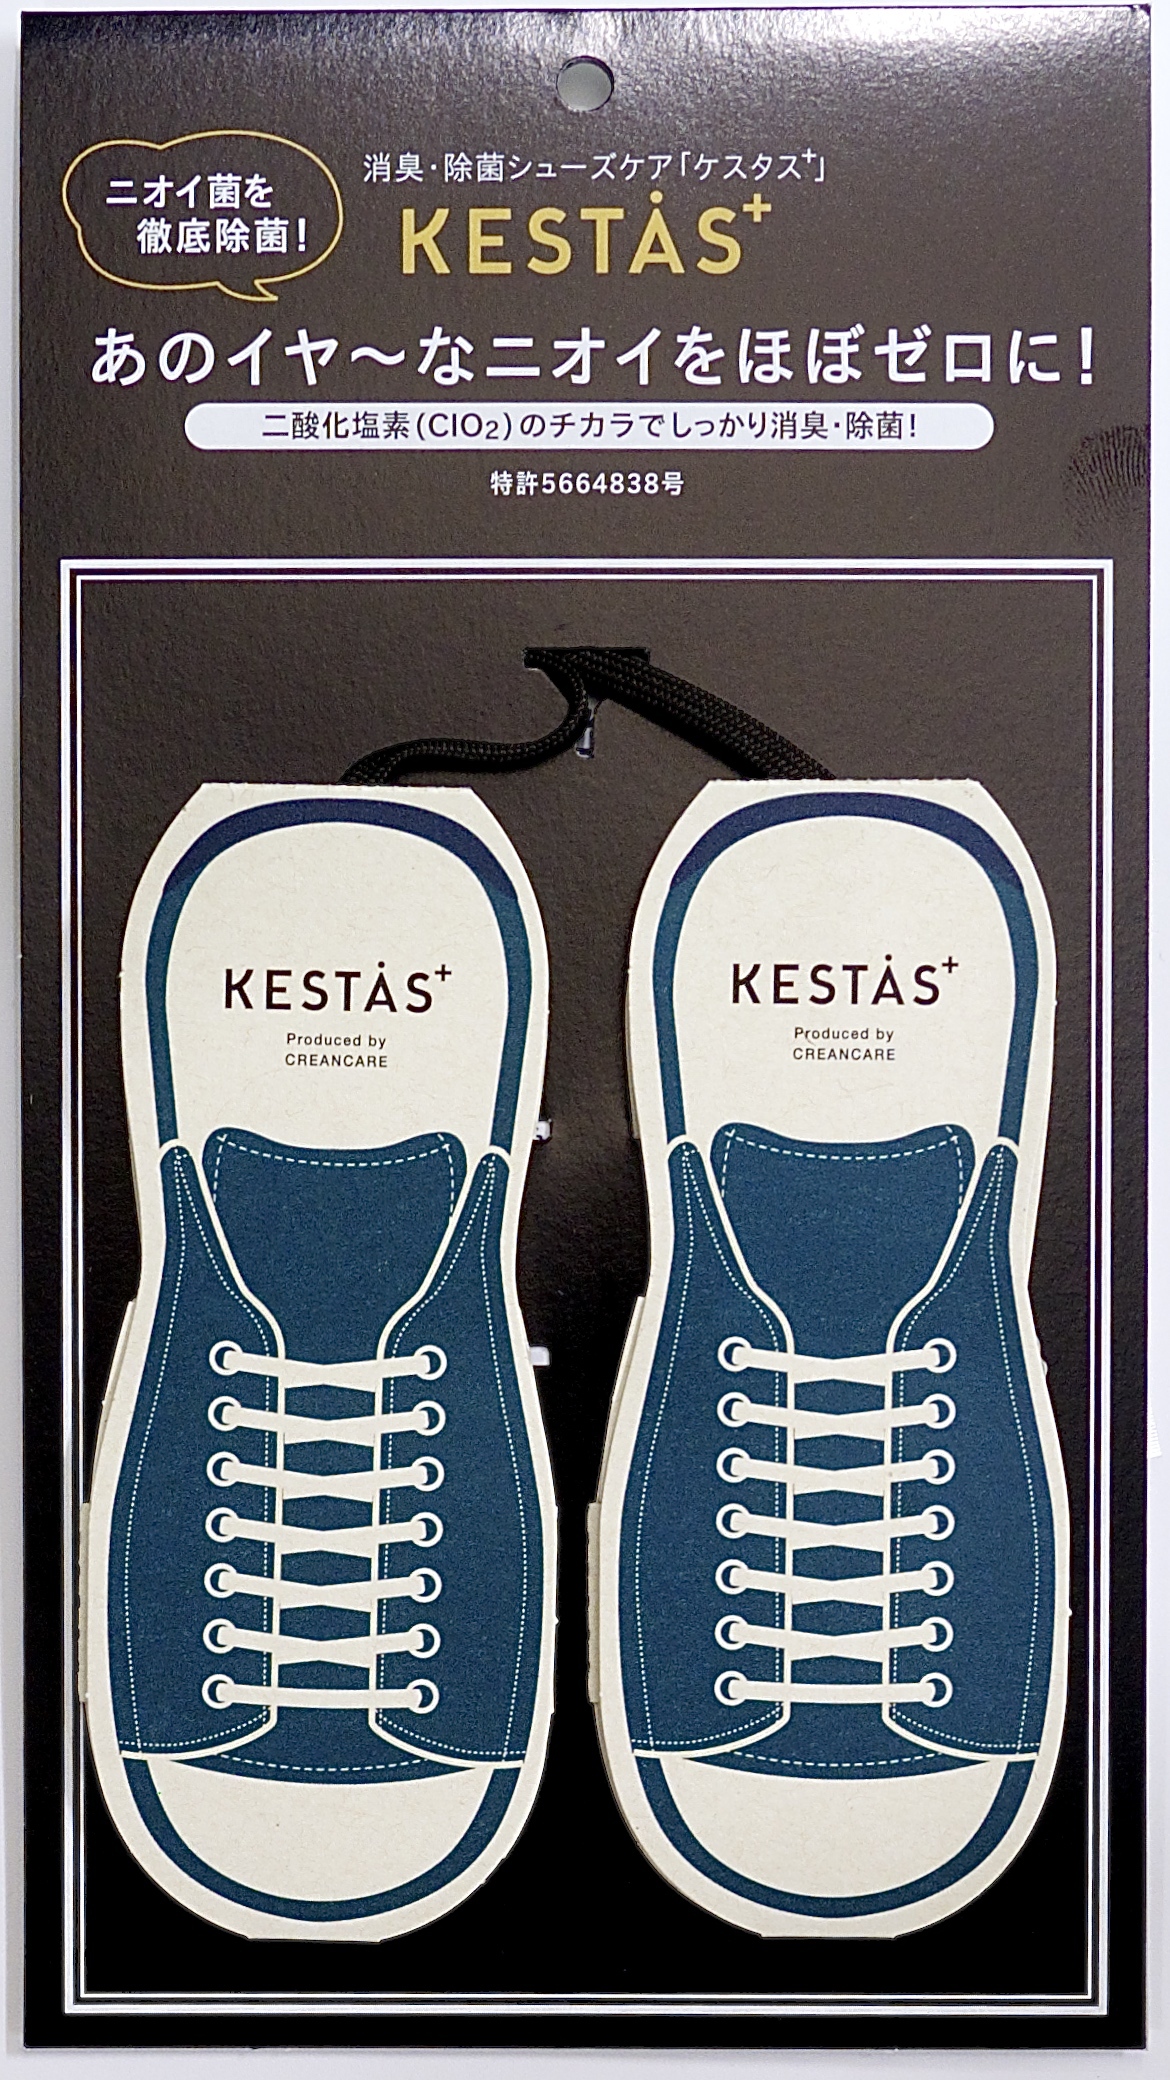 あらゆる日常の小空間を除菌 消臭する新ブランド Kestas スタート 二酸化塩素 の作用で靴やゴミ箱などから危険な菌や不快な臭い を一掃 株式会社オオクボのプレスリリース